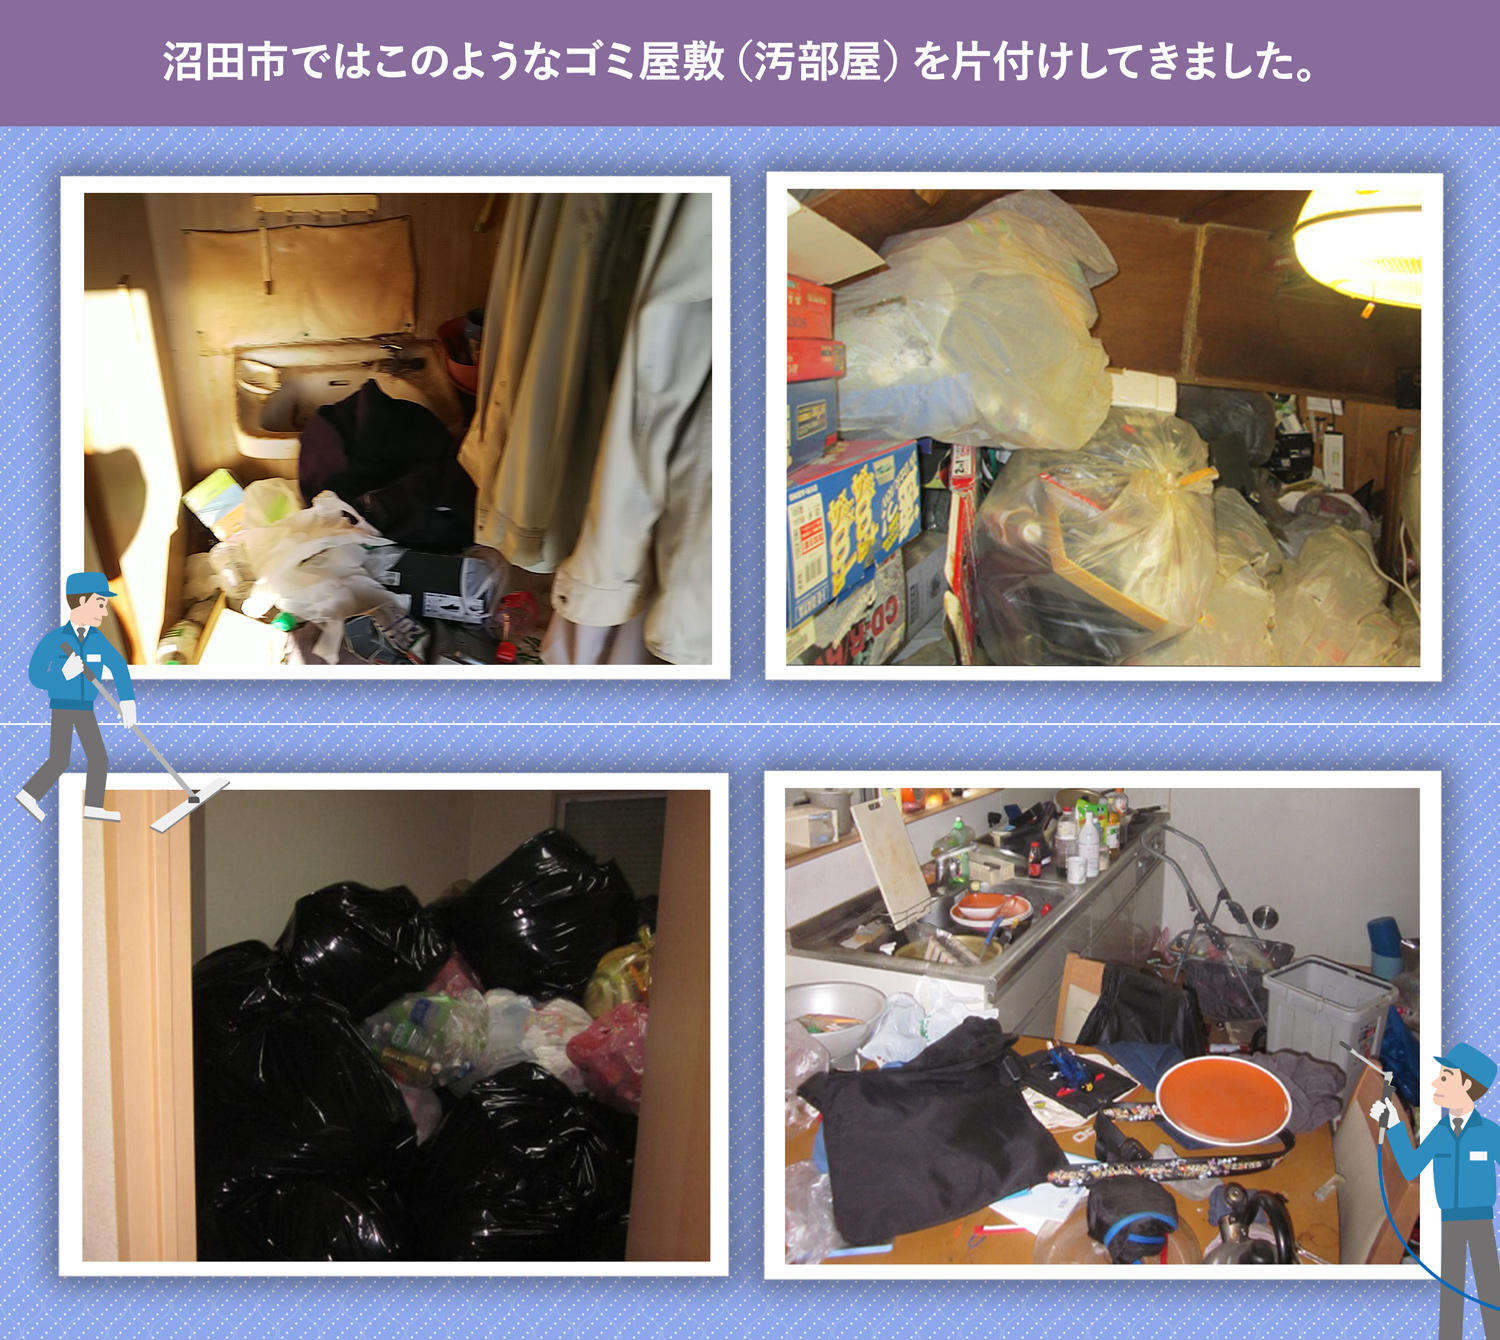 沼田市で行ったで行ったごみ屋敷・汚部屋の片付けの一例